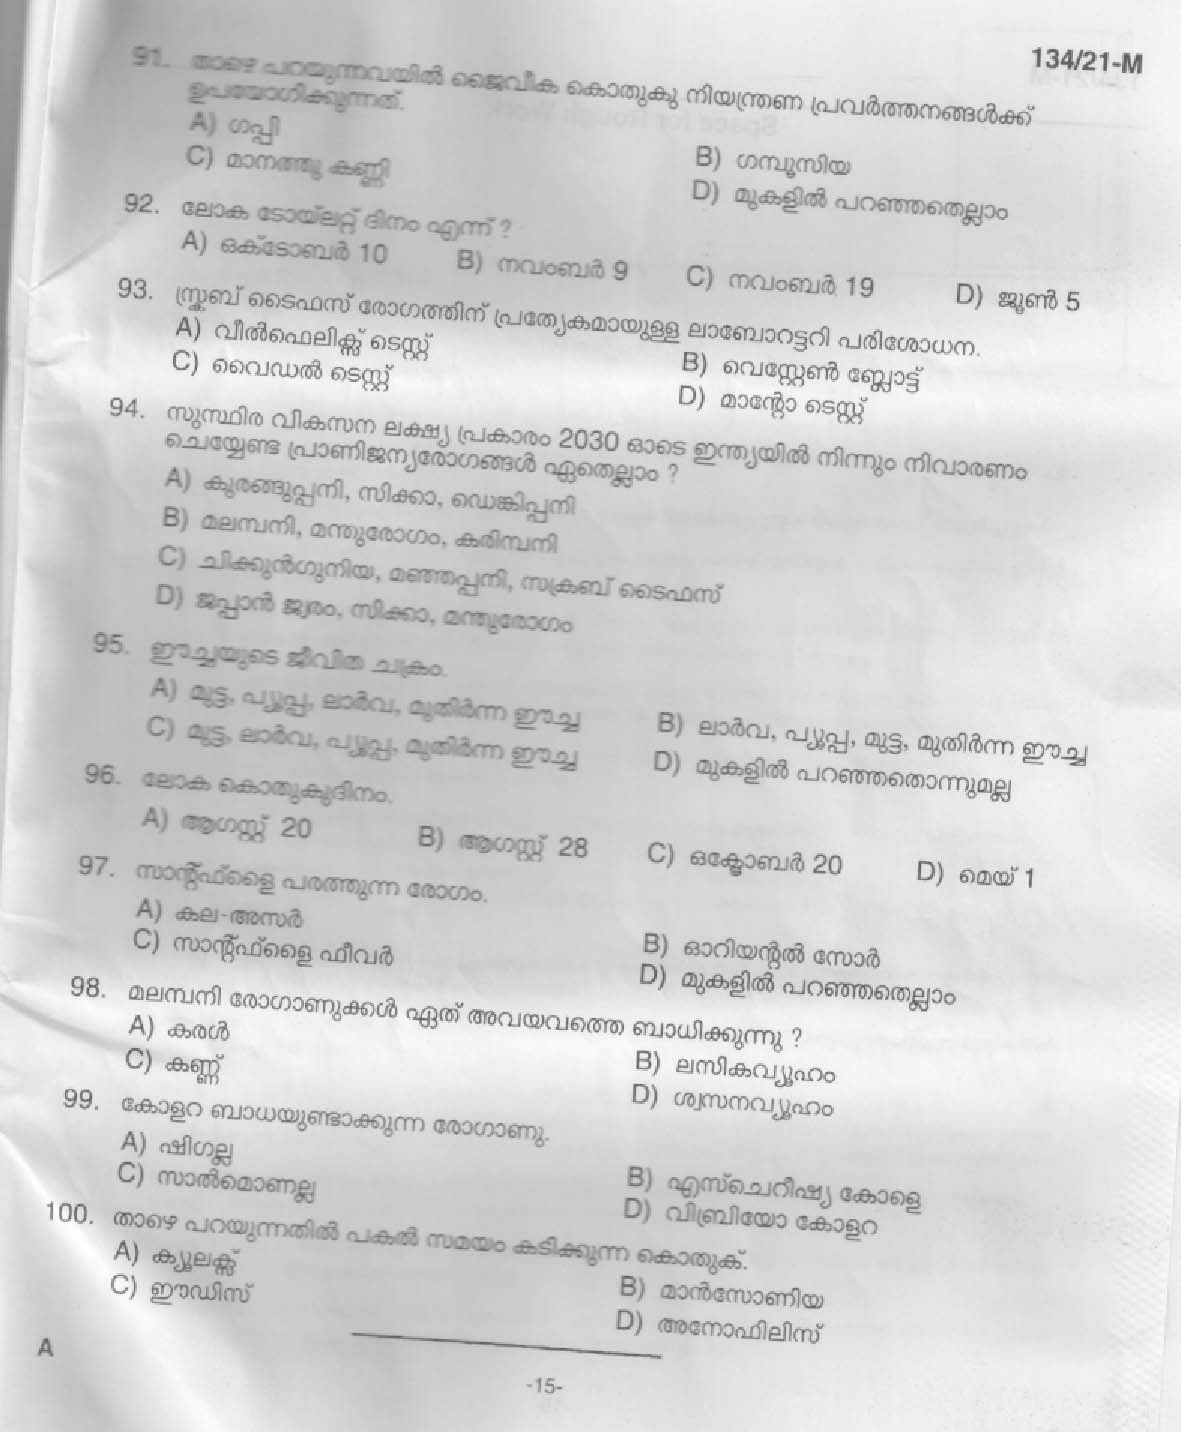 KPSC Field Worker Malayalam Exam 2021 Code 1342021 M 13